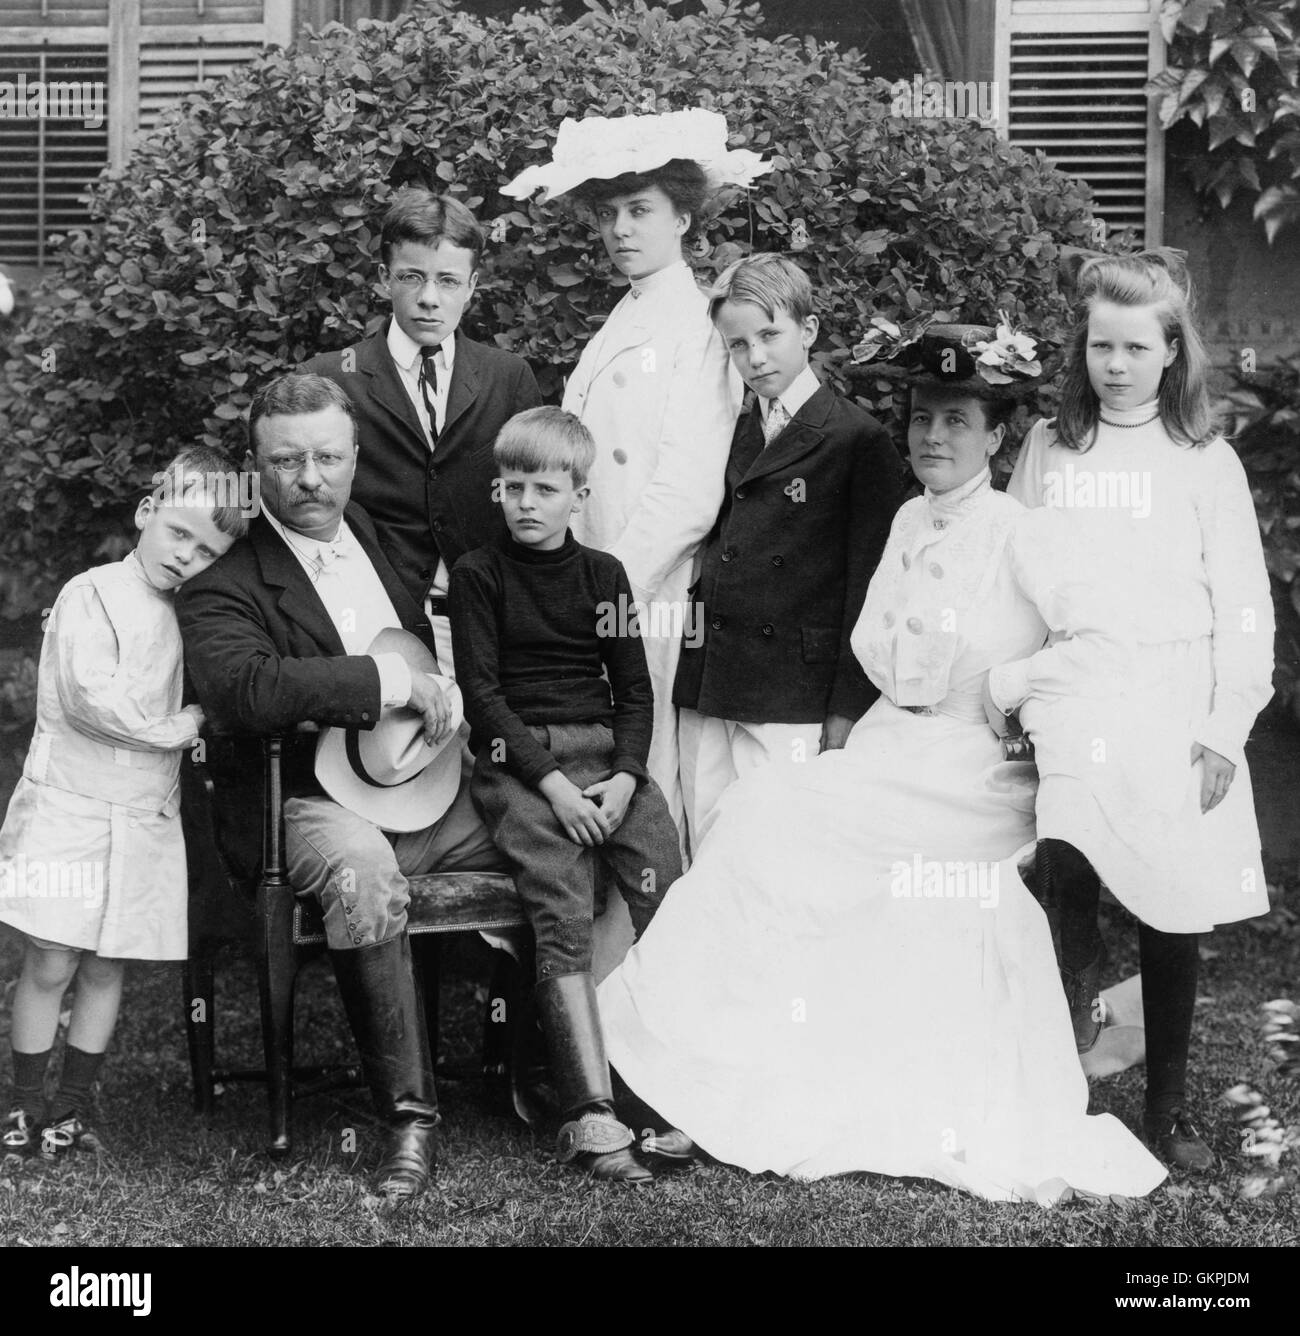 Präsident und Frau Theodore Roosevelt sitzen auf Rasen, umgeben von ihrer Familie; 1903 von links nach rechts: Quentin, Theodore Sr., Theodore Jr., Archie, Alice, Kermit, Edith und Ethel. Stockfoto